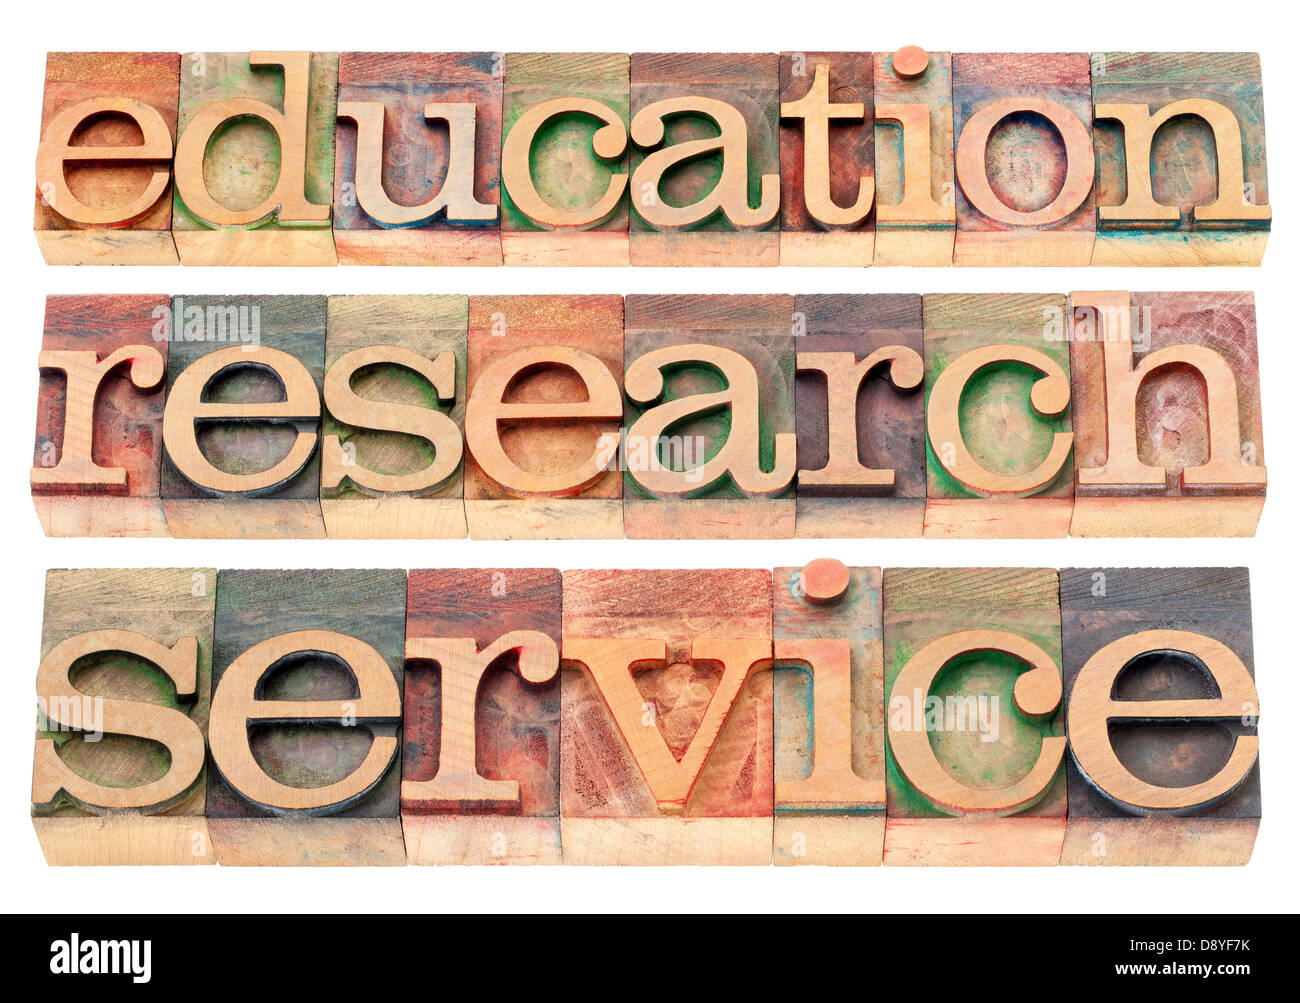 Bildung, Forschung und Service Wörter - mögliche Universität oder Hochschule Slogan oder Erklärung Stockfoto